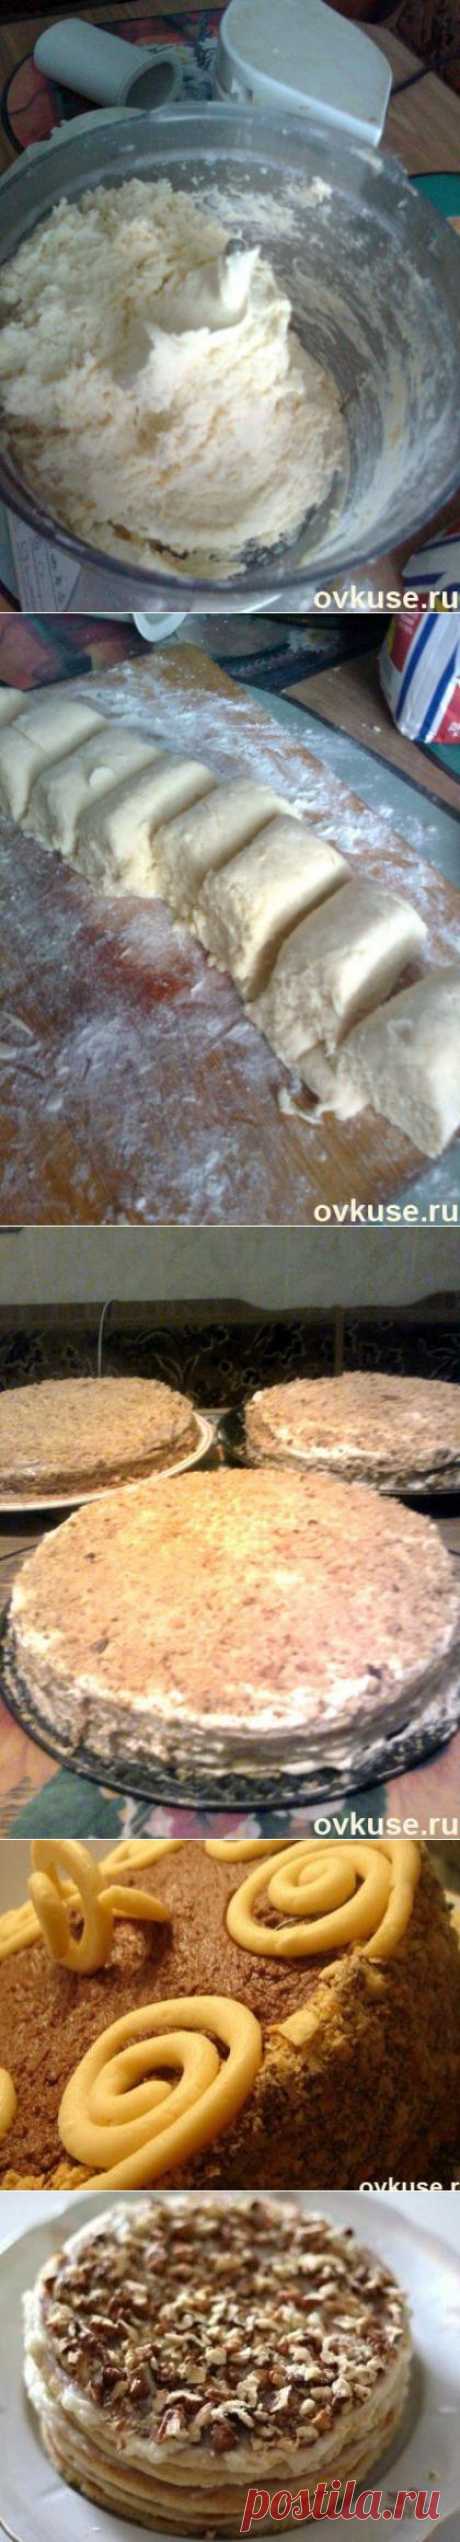 Торт наполеон-пошаговая инструкция и несколько кремов к торту - Простые рецепты Овкусе.ру